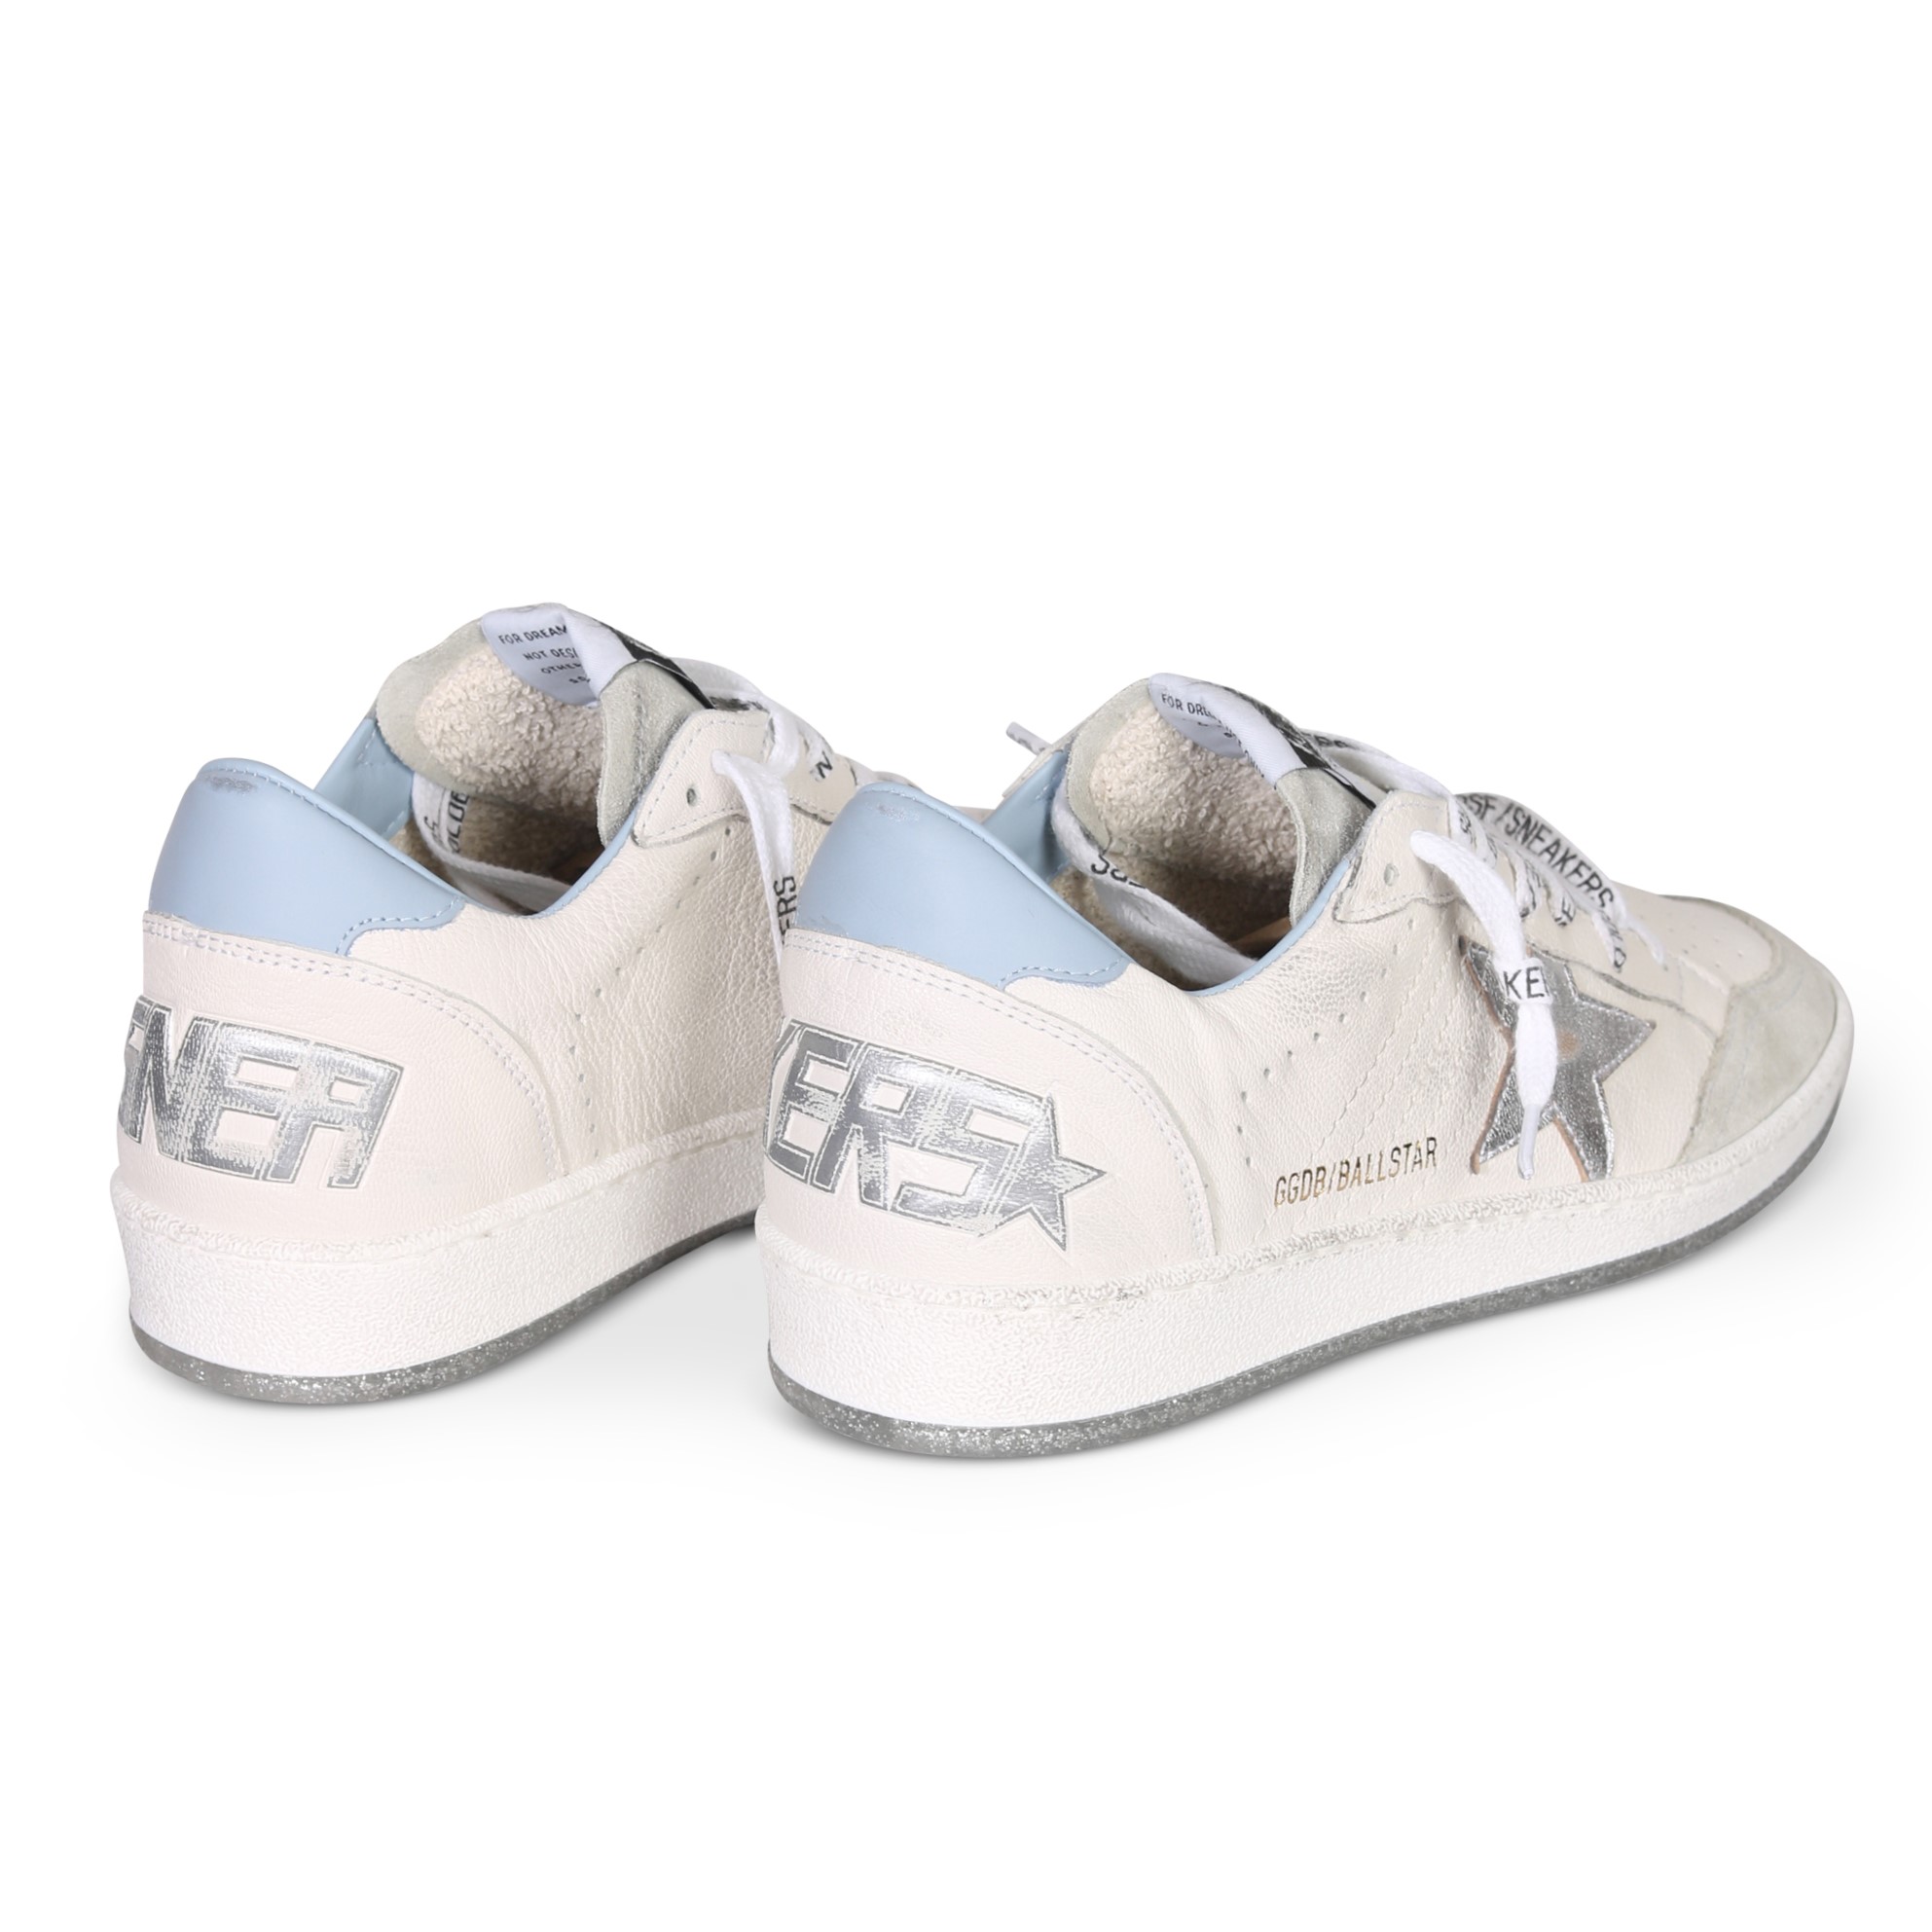 GOLDEN GOOSE Sneaker Ballstar in White/Light Blue/Silver 37